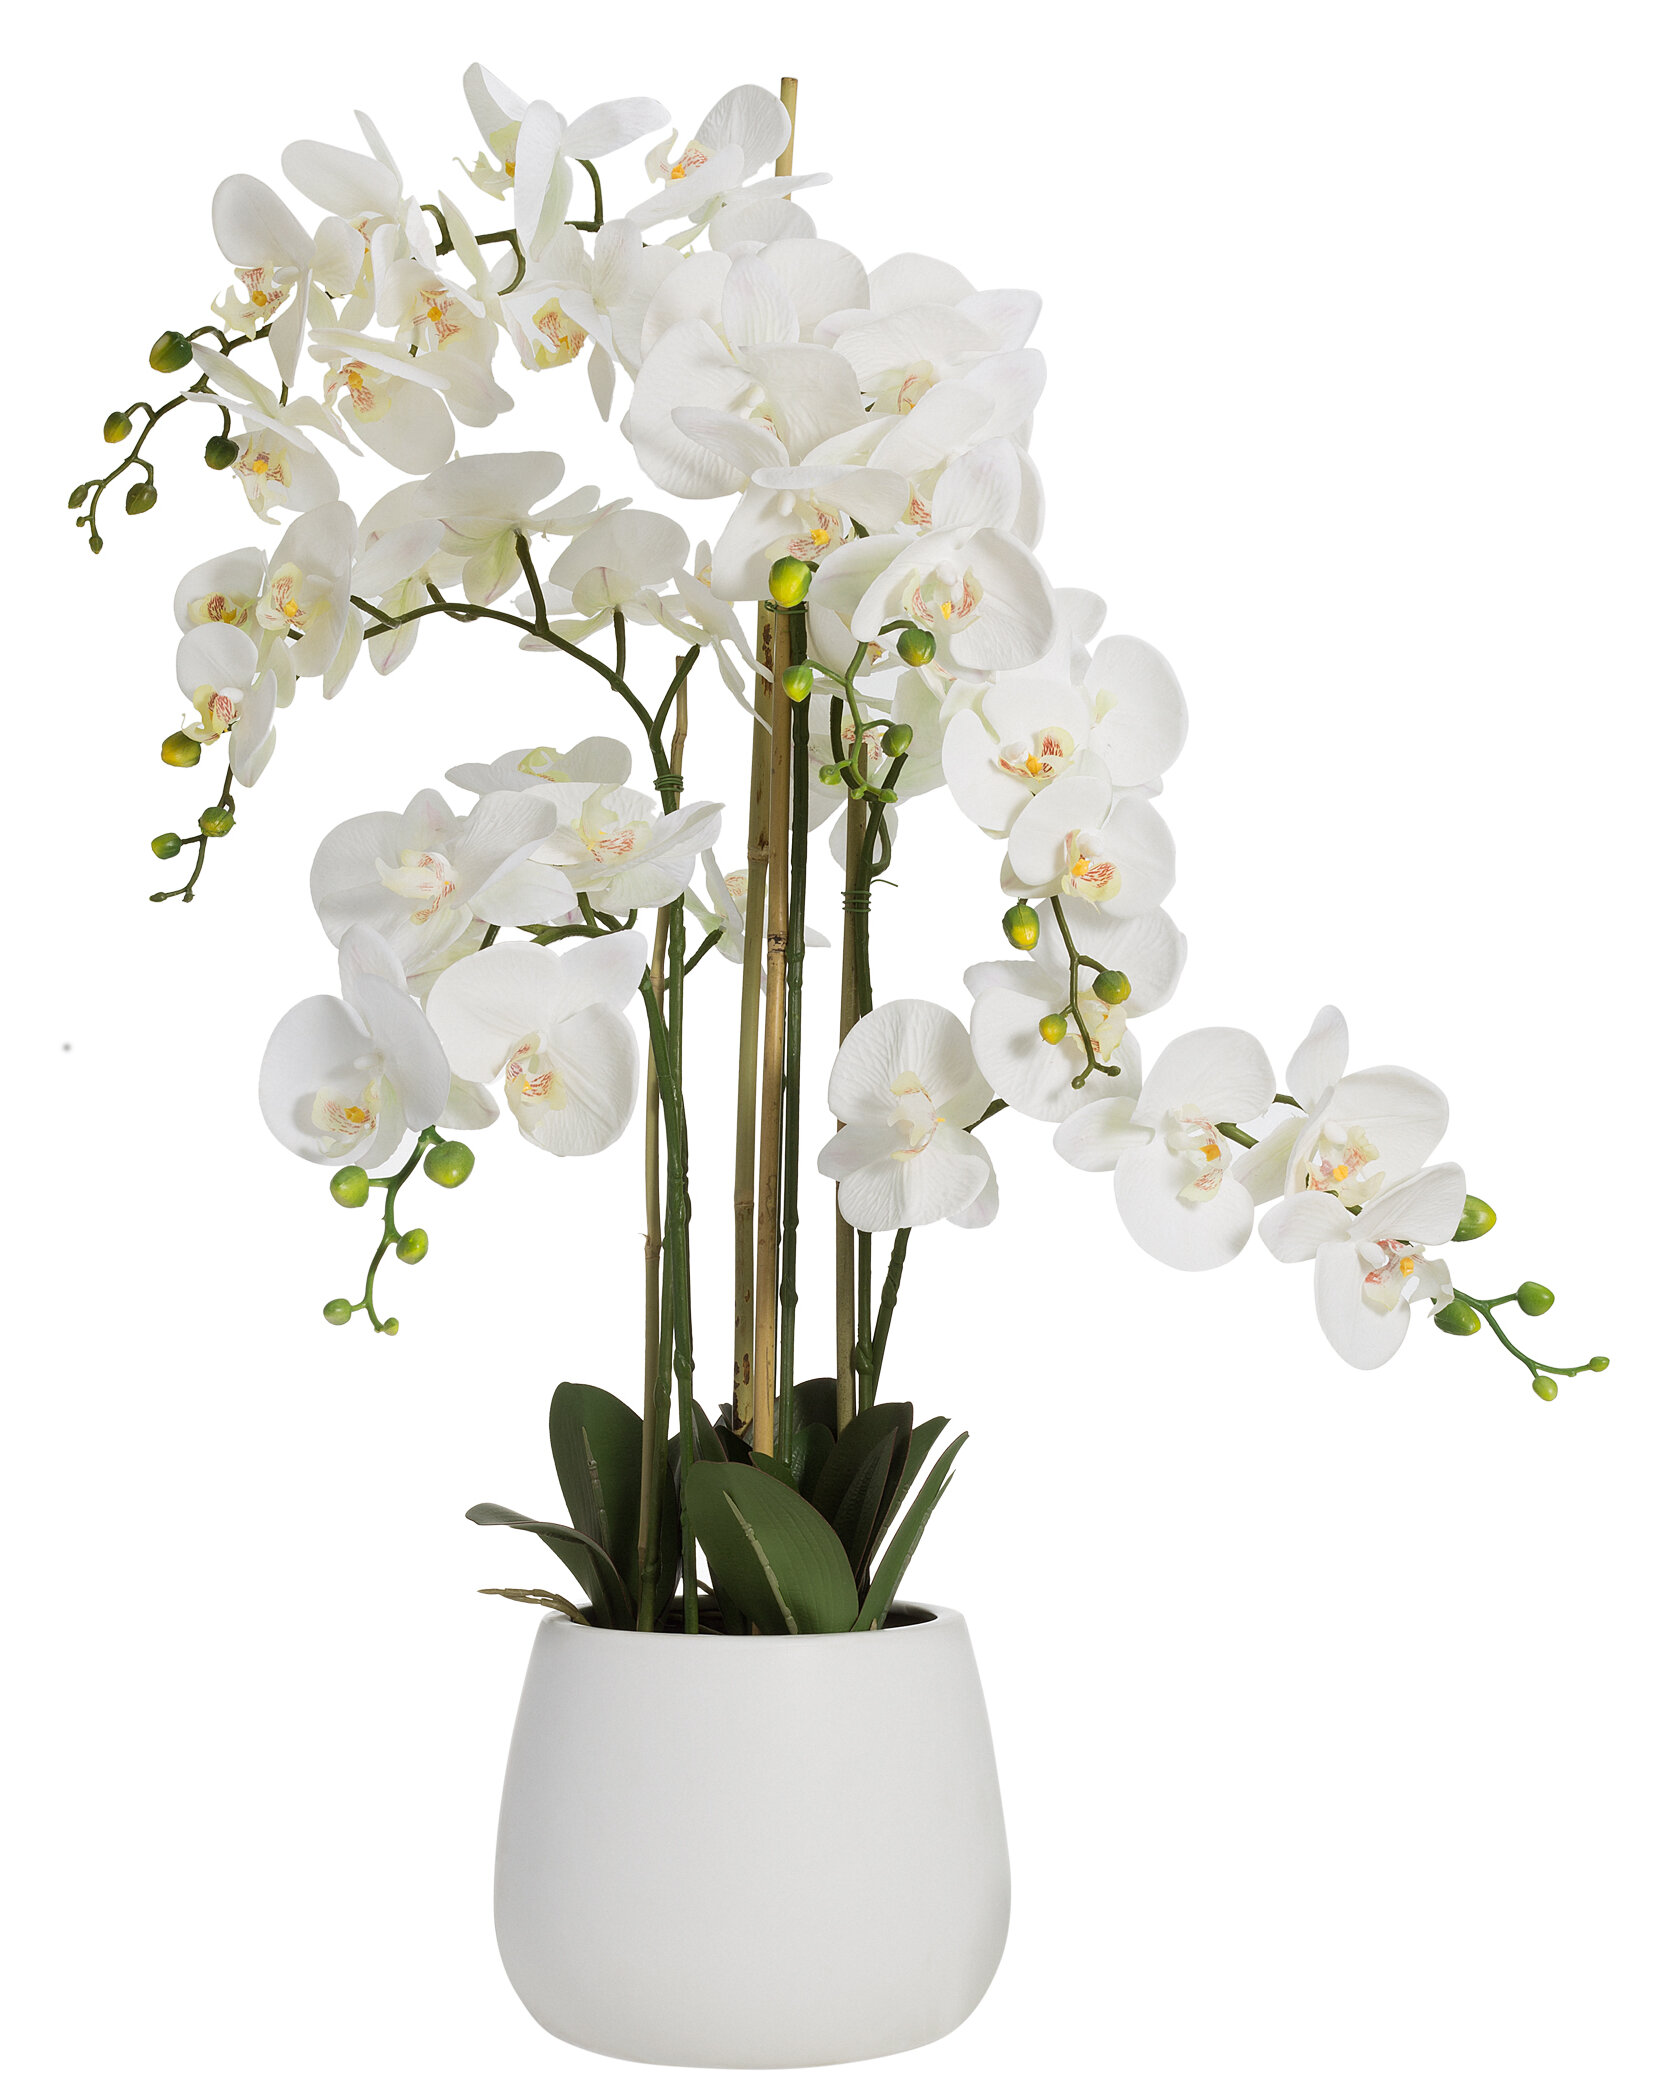 The Seasonal Aisle Artificial Orchid Floral Arrangement In Pot Reviews Wayfair Co Uk